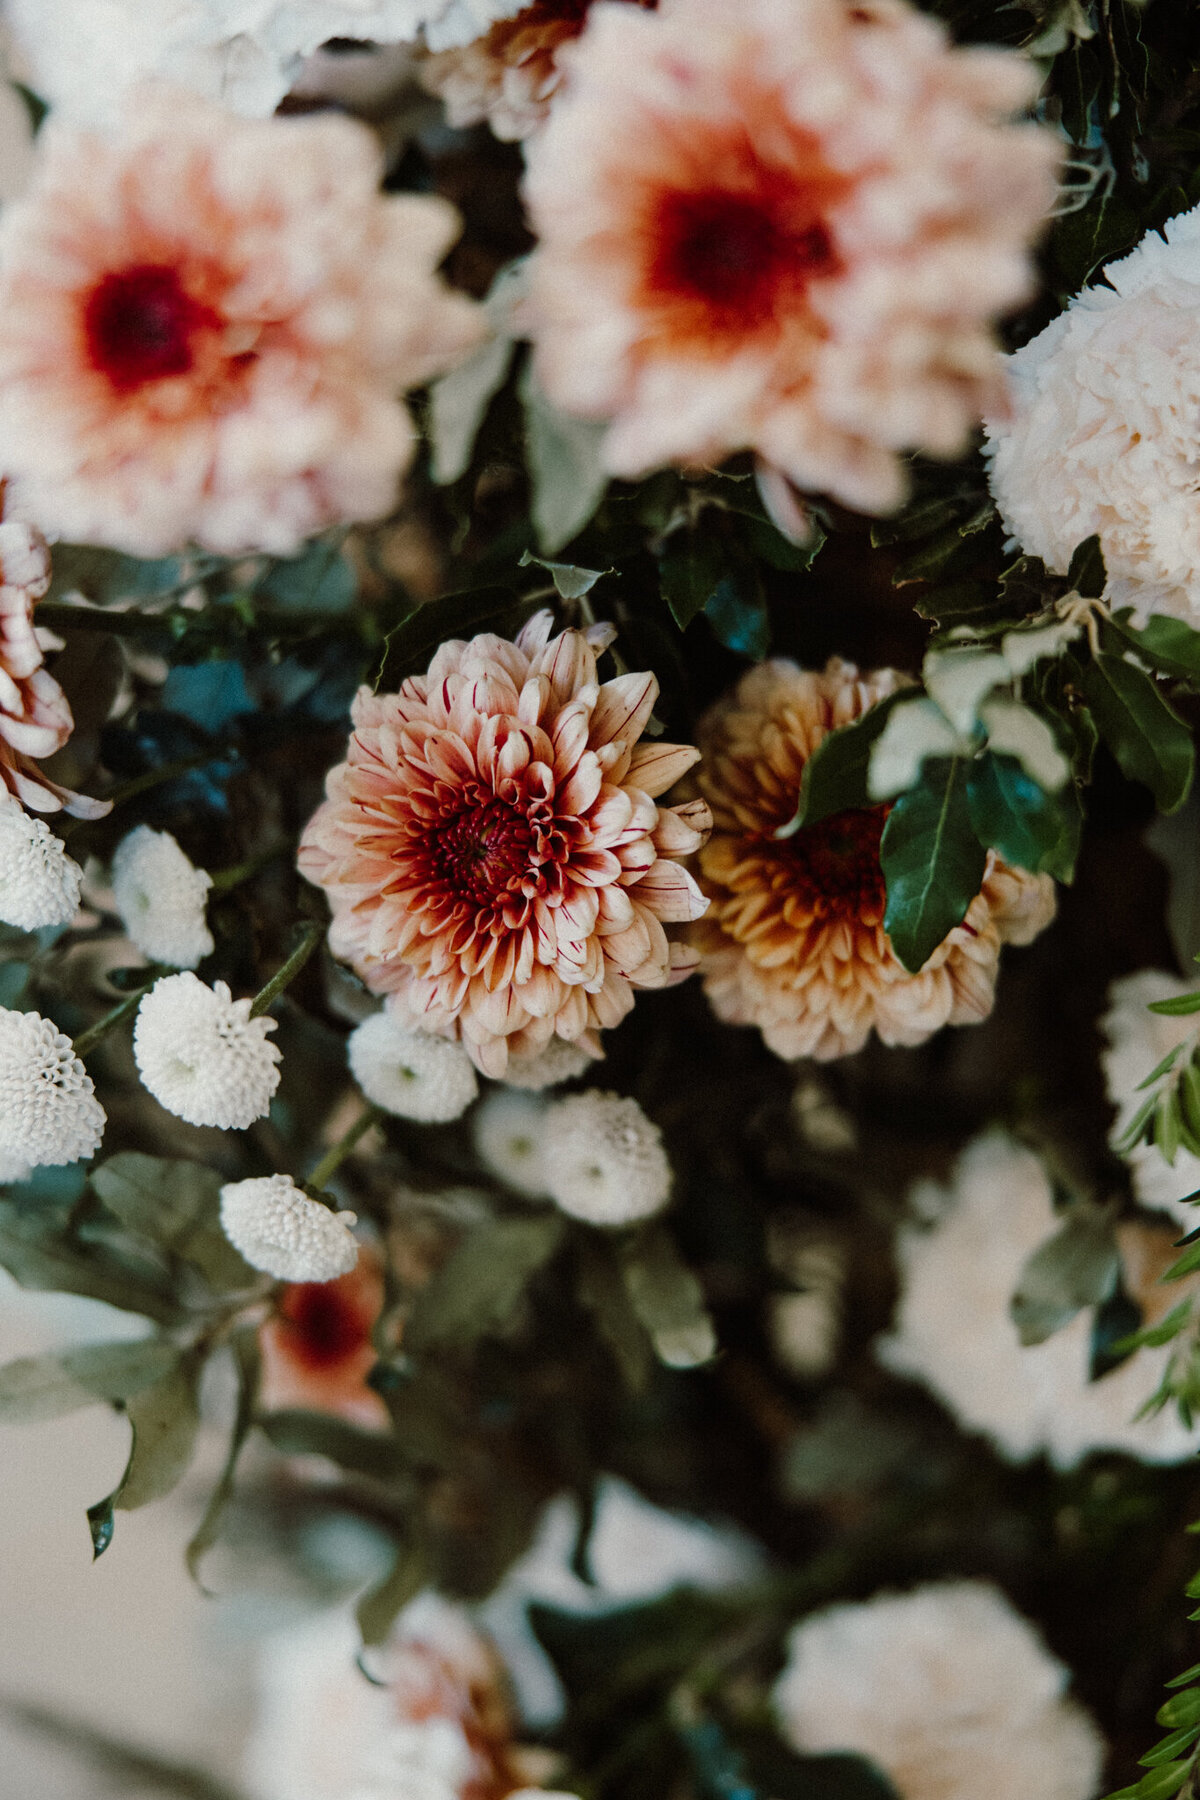 Upwaltham Barns wedding flowers (53)